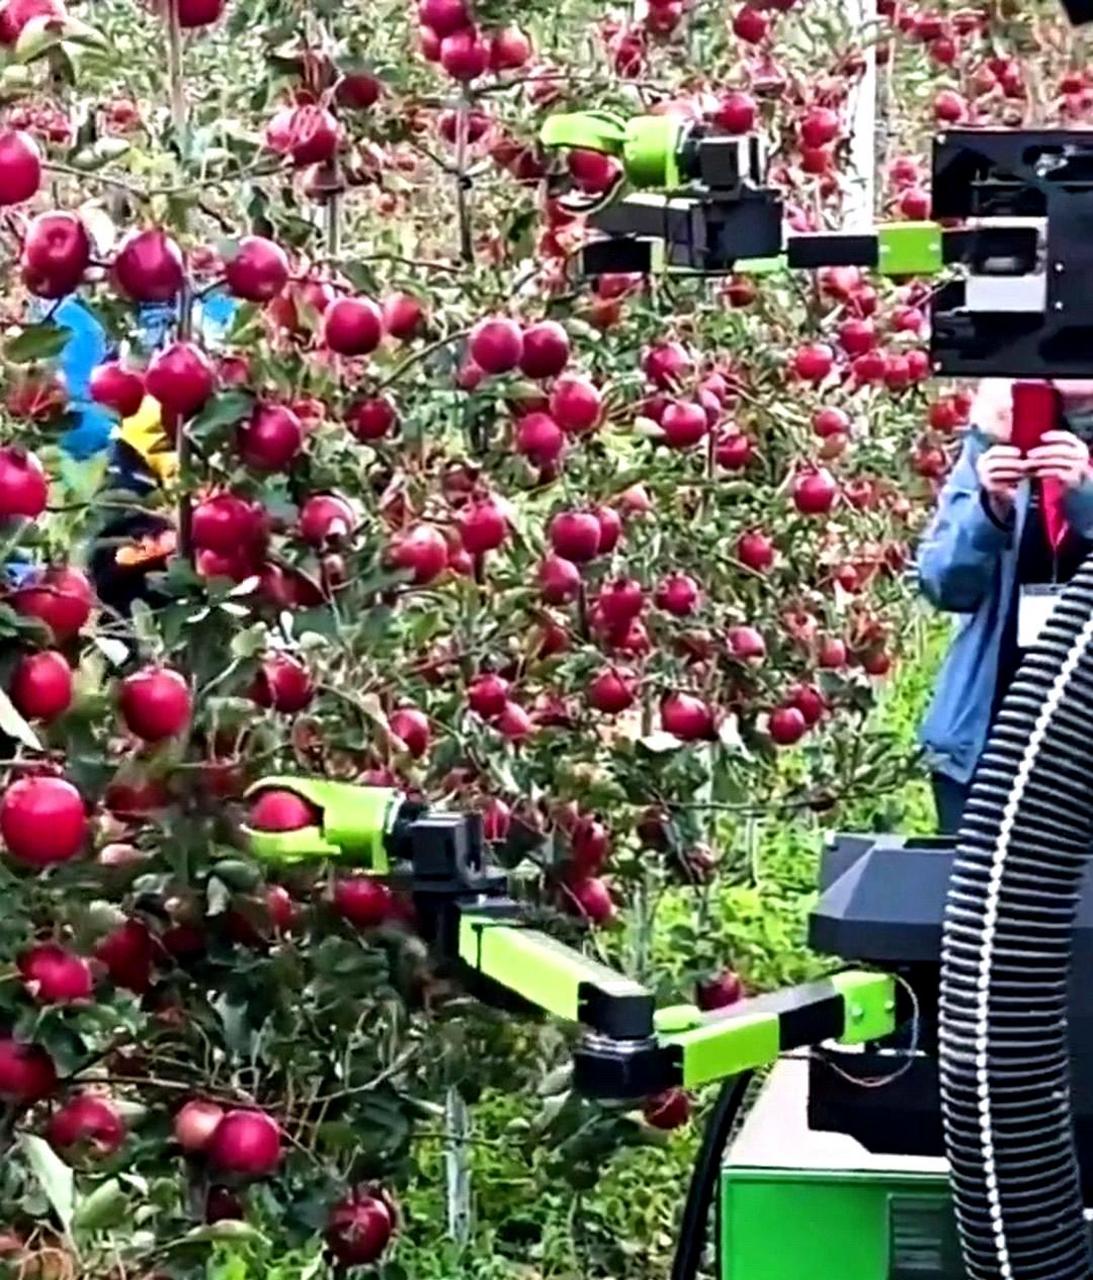 科技如今已经非常先进,甚至用机器人来摘苹果.